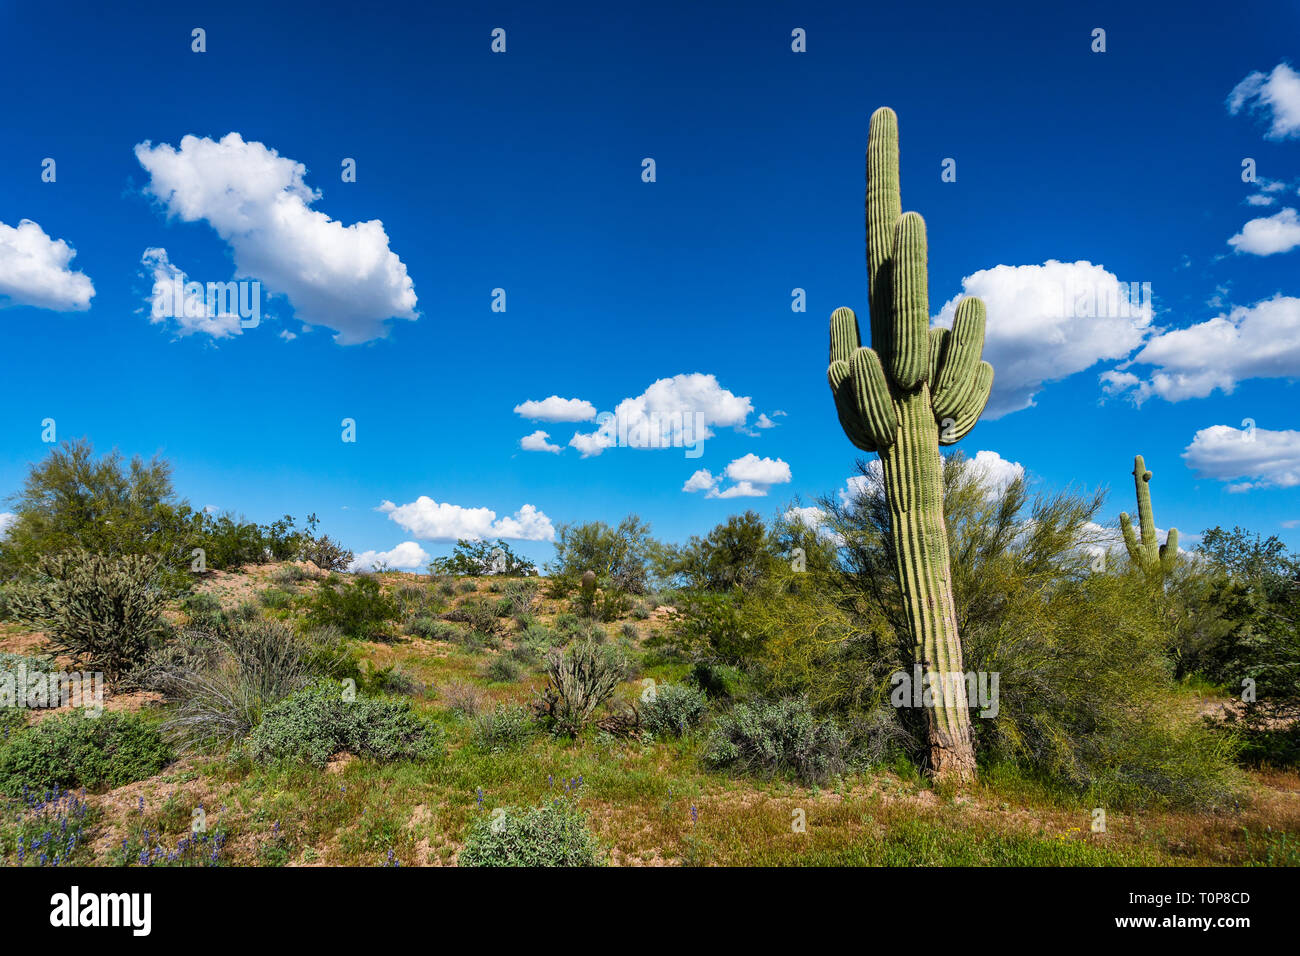 Cactus géant Saguaro dans un paysage désertique avec ciel bleu à Phoenix, Arizona Banque D'Images